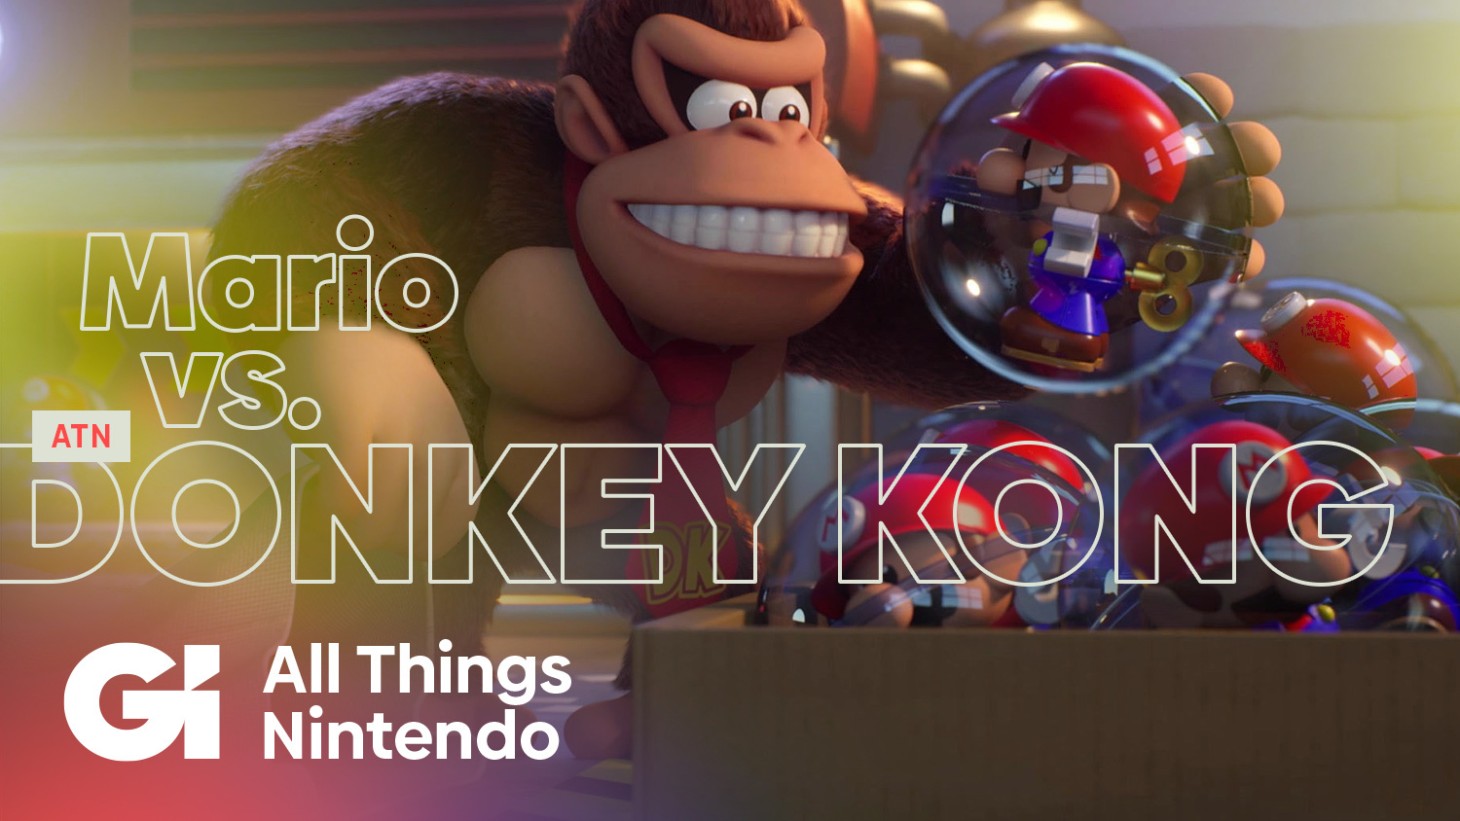 All Things Nintendo